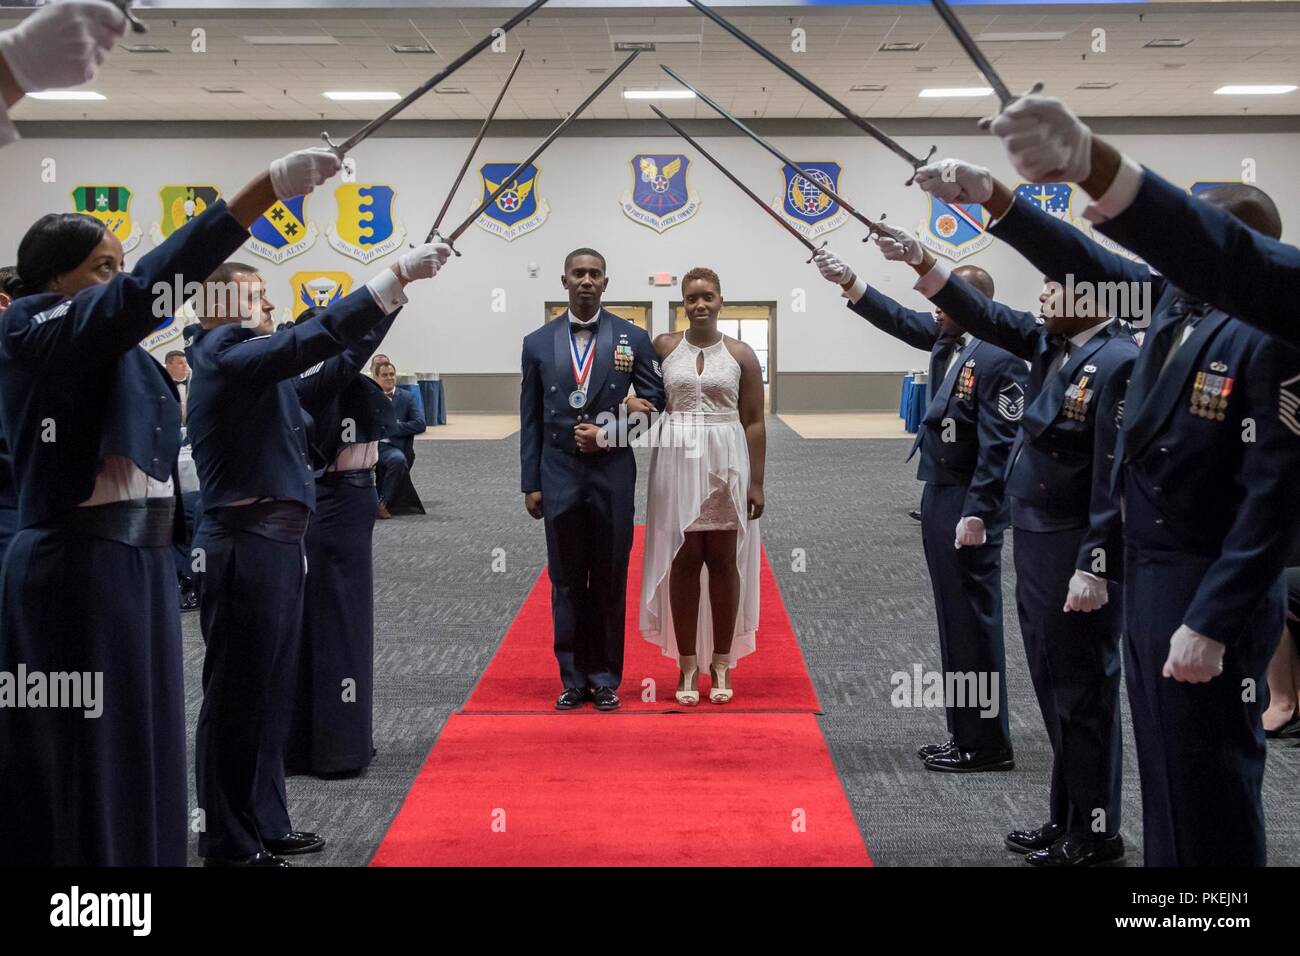 Les sergents technique célébrer leur sélection pour le Master Sergeant au cours d'une cérémonie d'intronisation des sous-officiers supérieurs à la base aérienne de Barksdale, en Louisiane, le 10 août 2018. Banque D'Images